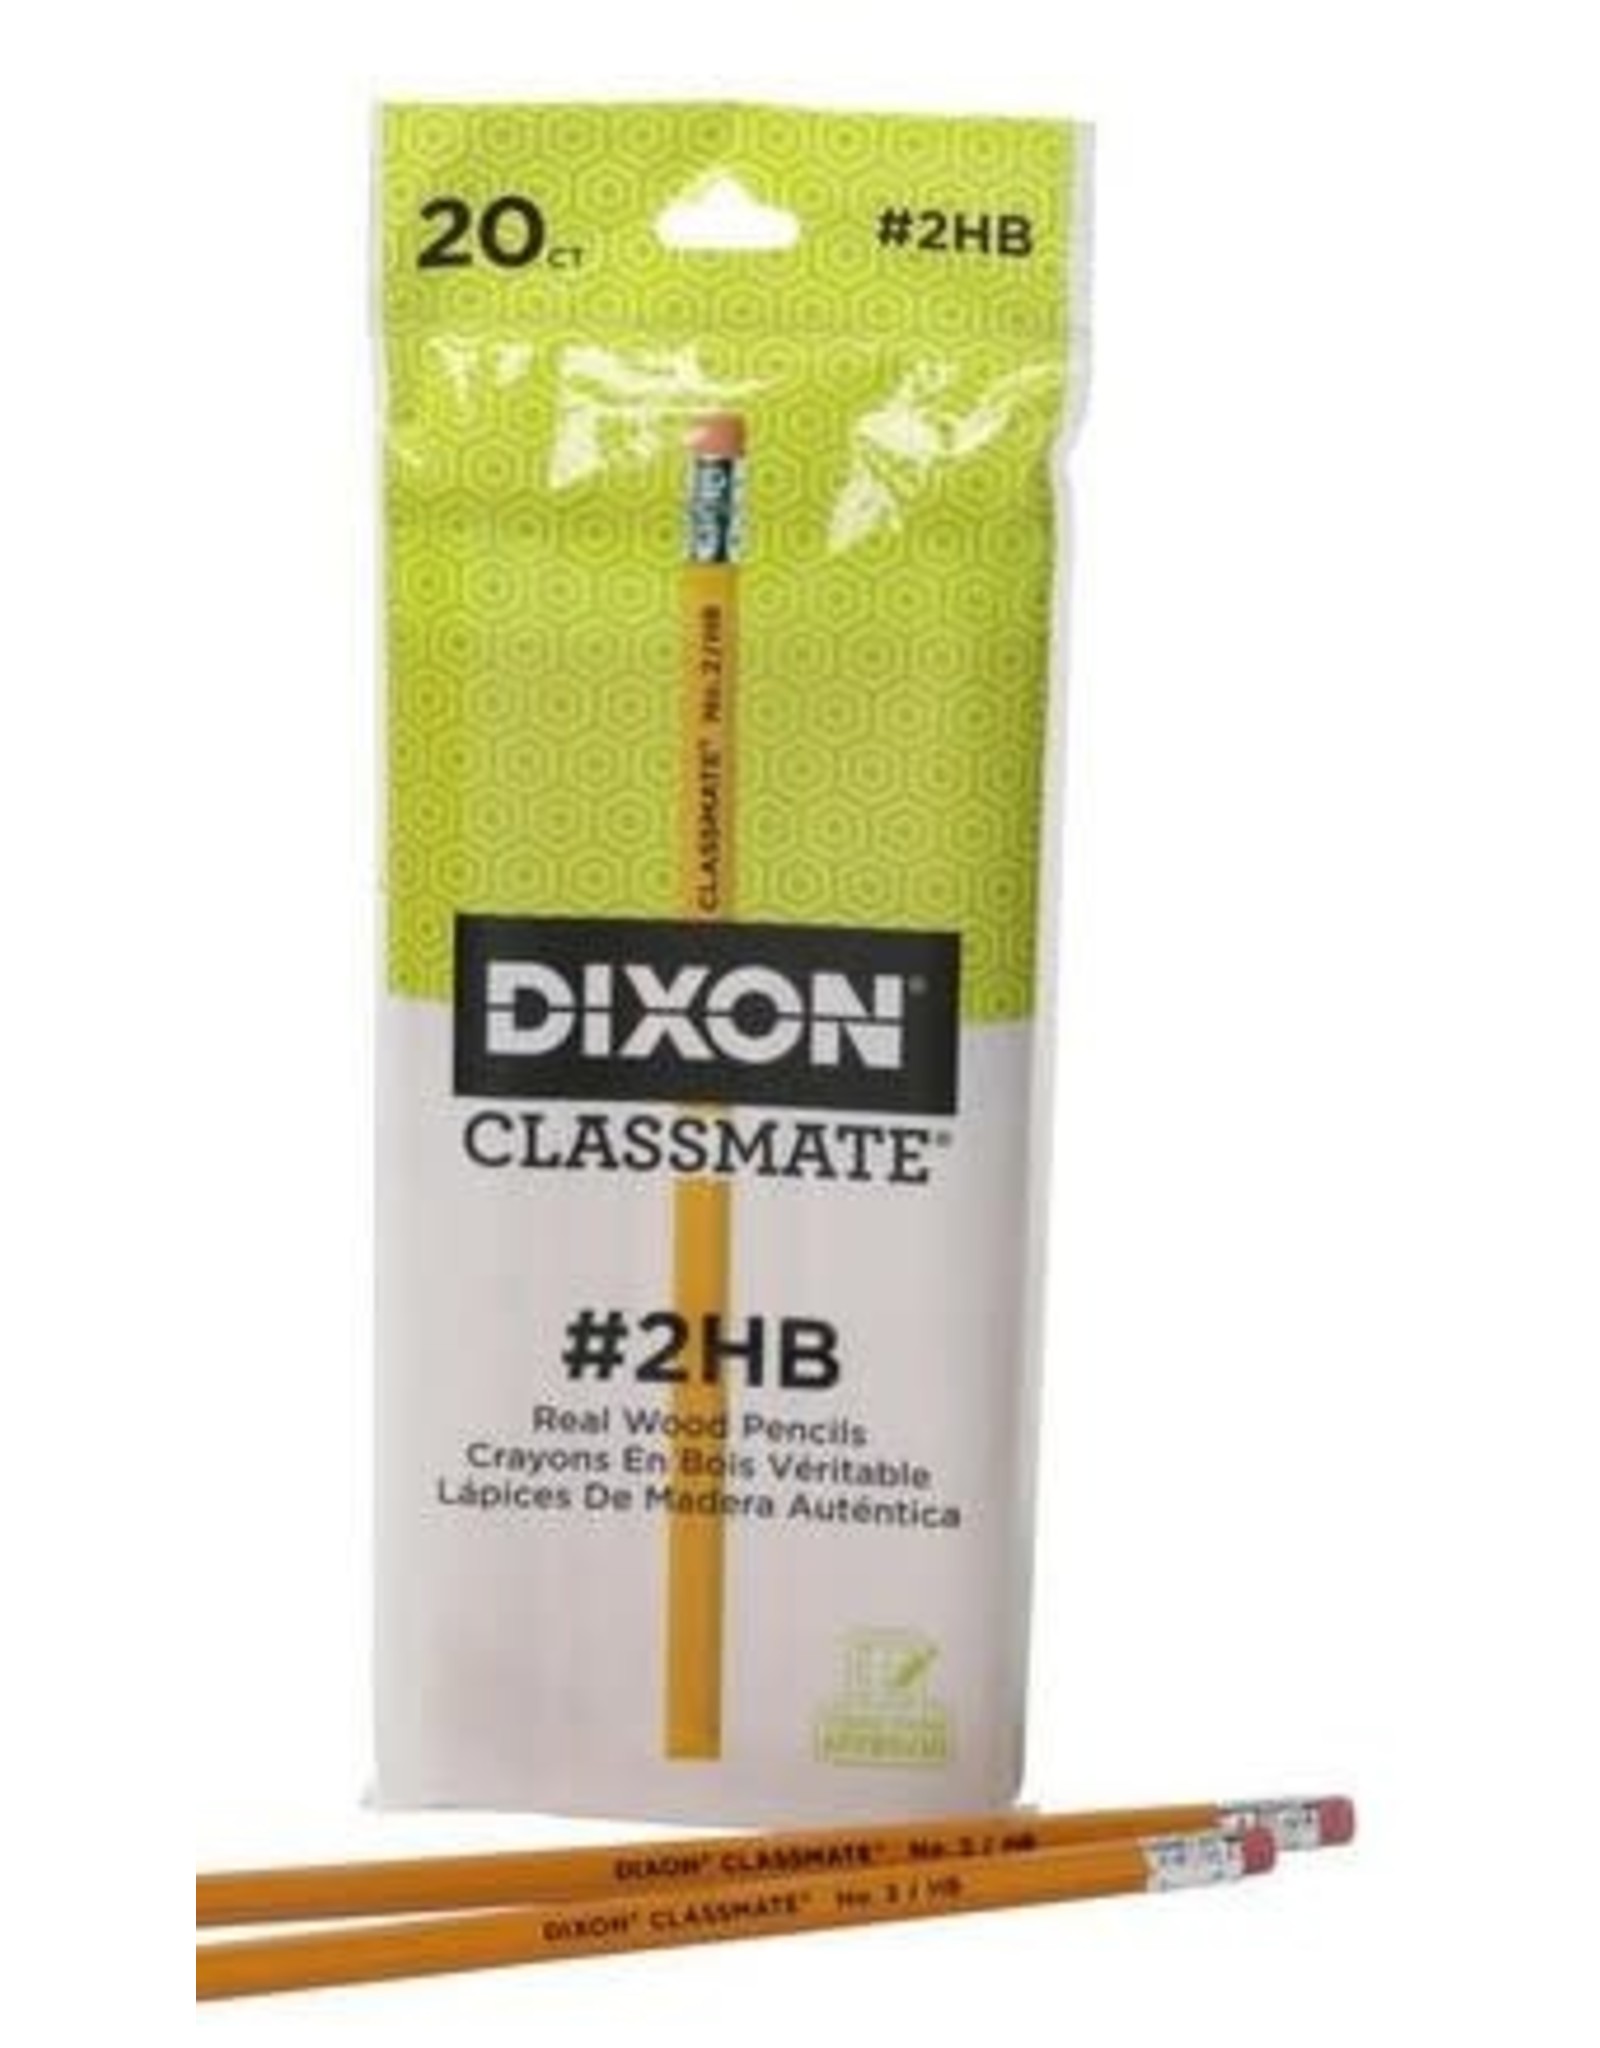 Dixon Classmate 2hb Pencils